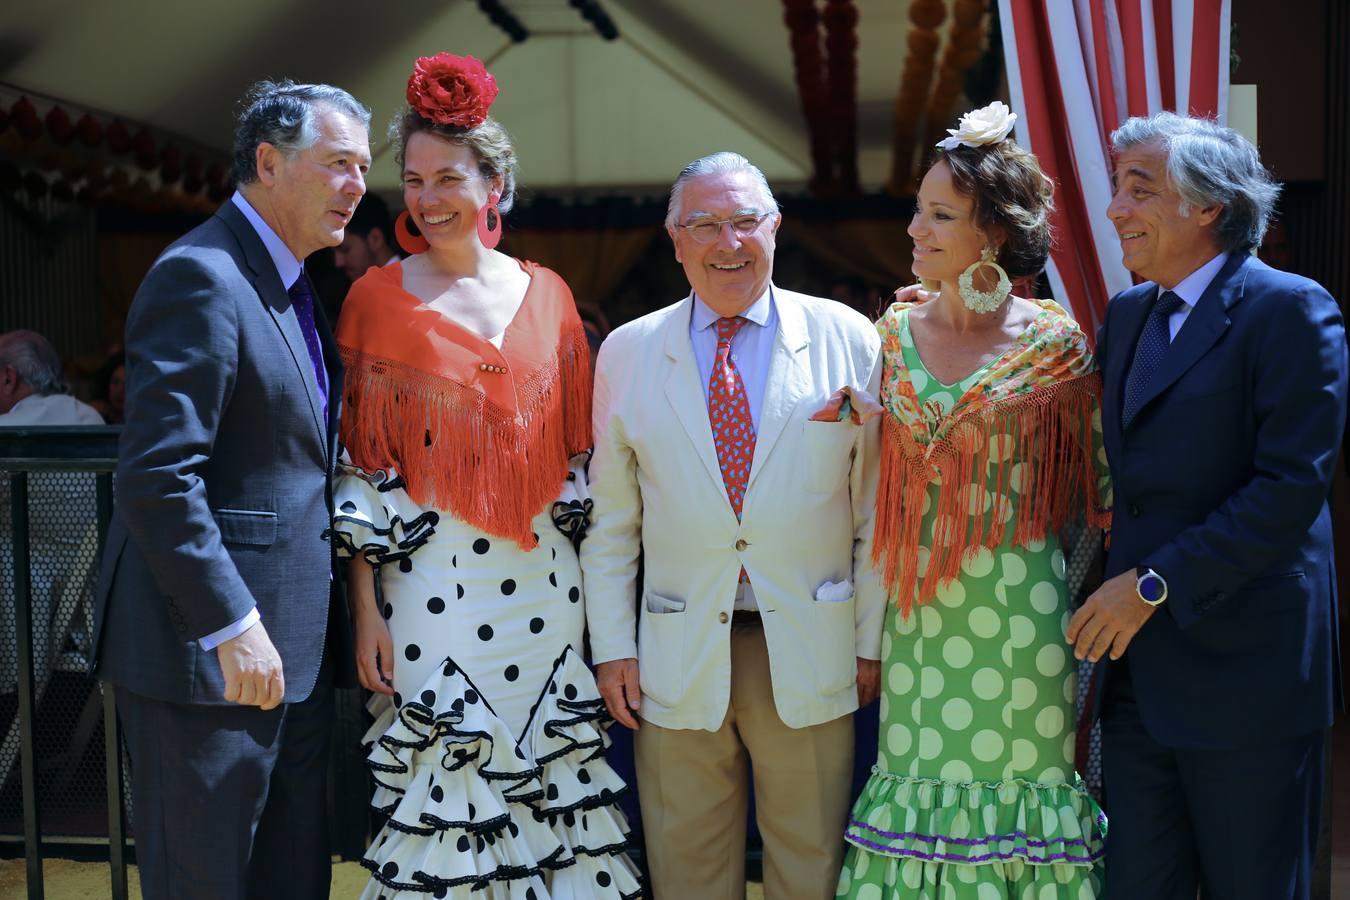 José María Michavila, Alejandra Salinas, Enrique Moreno de la Cova, Mamen Fullana y Daniel de Fernando